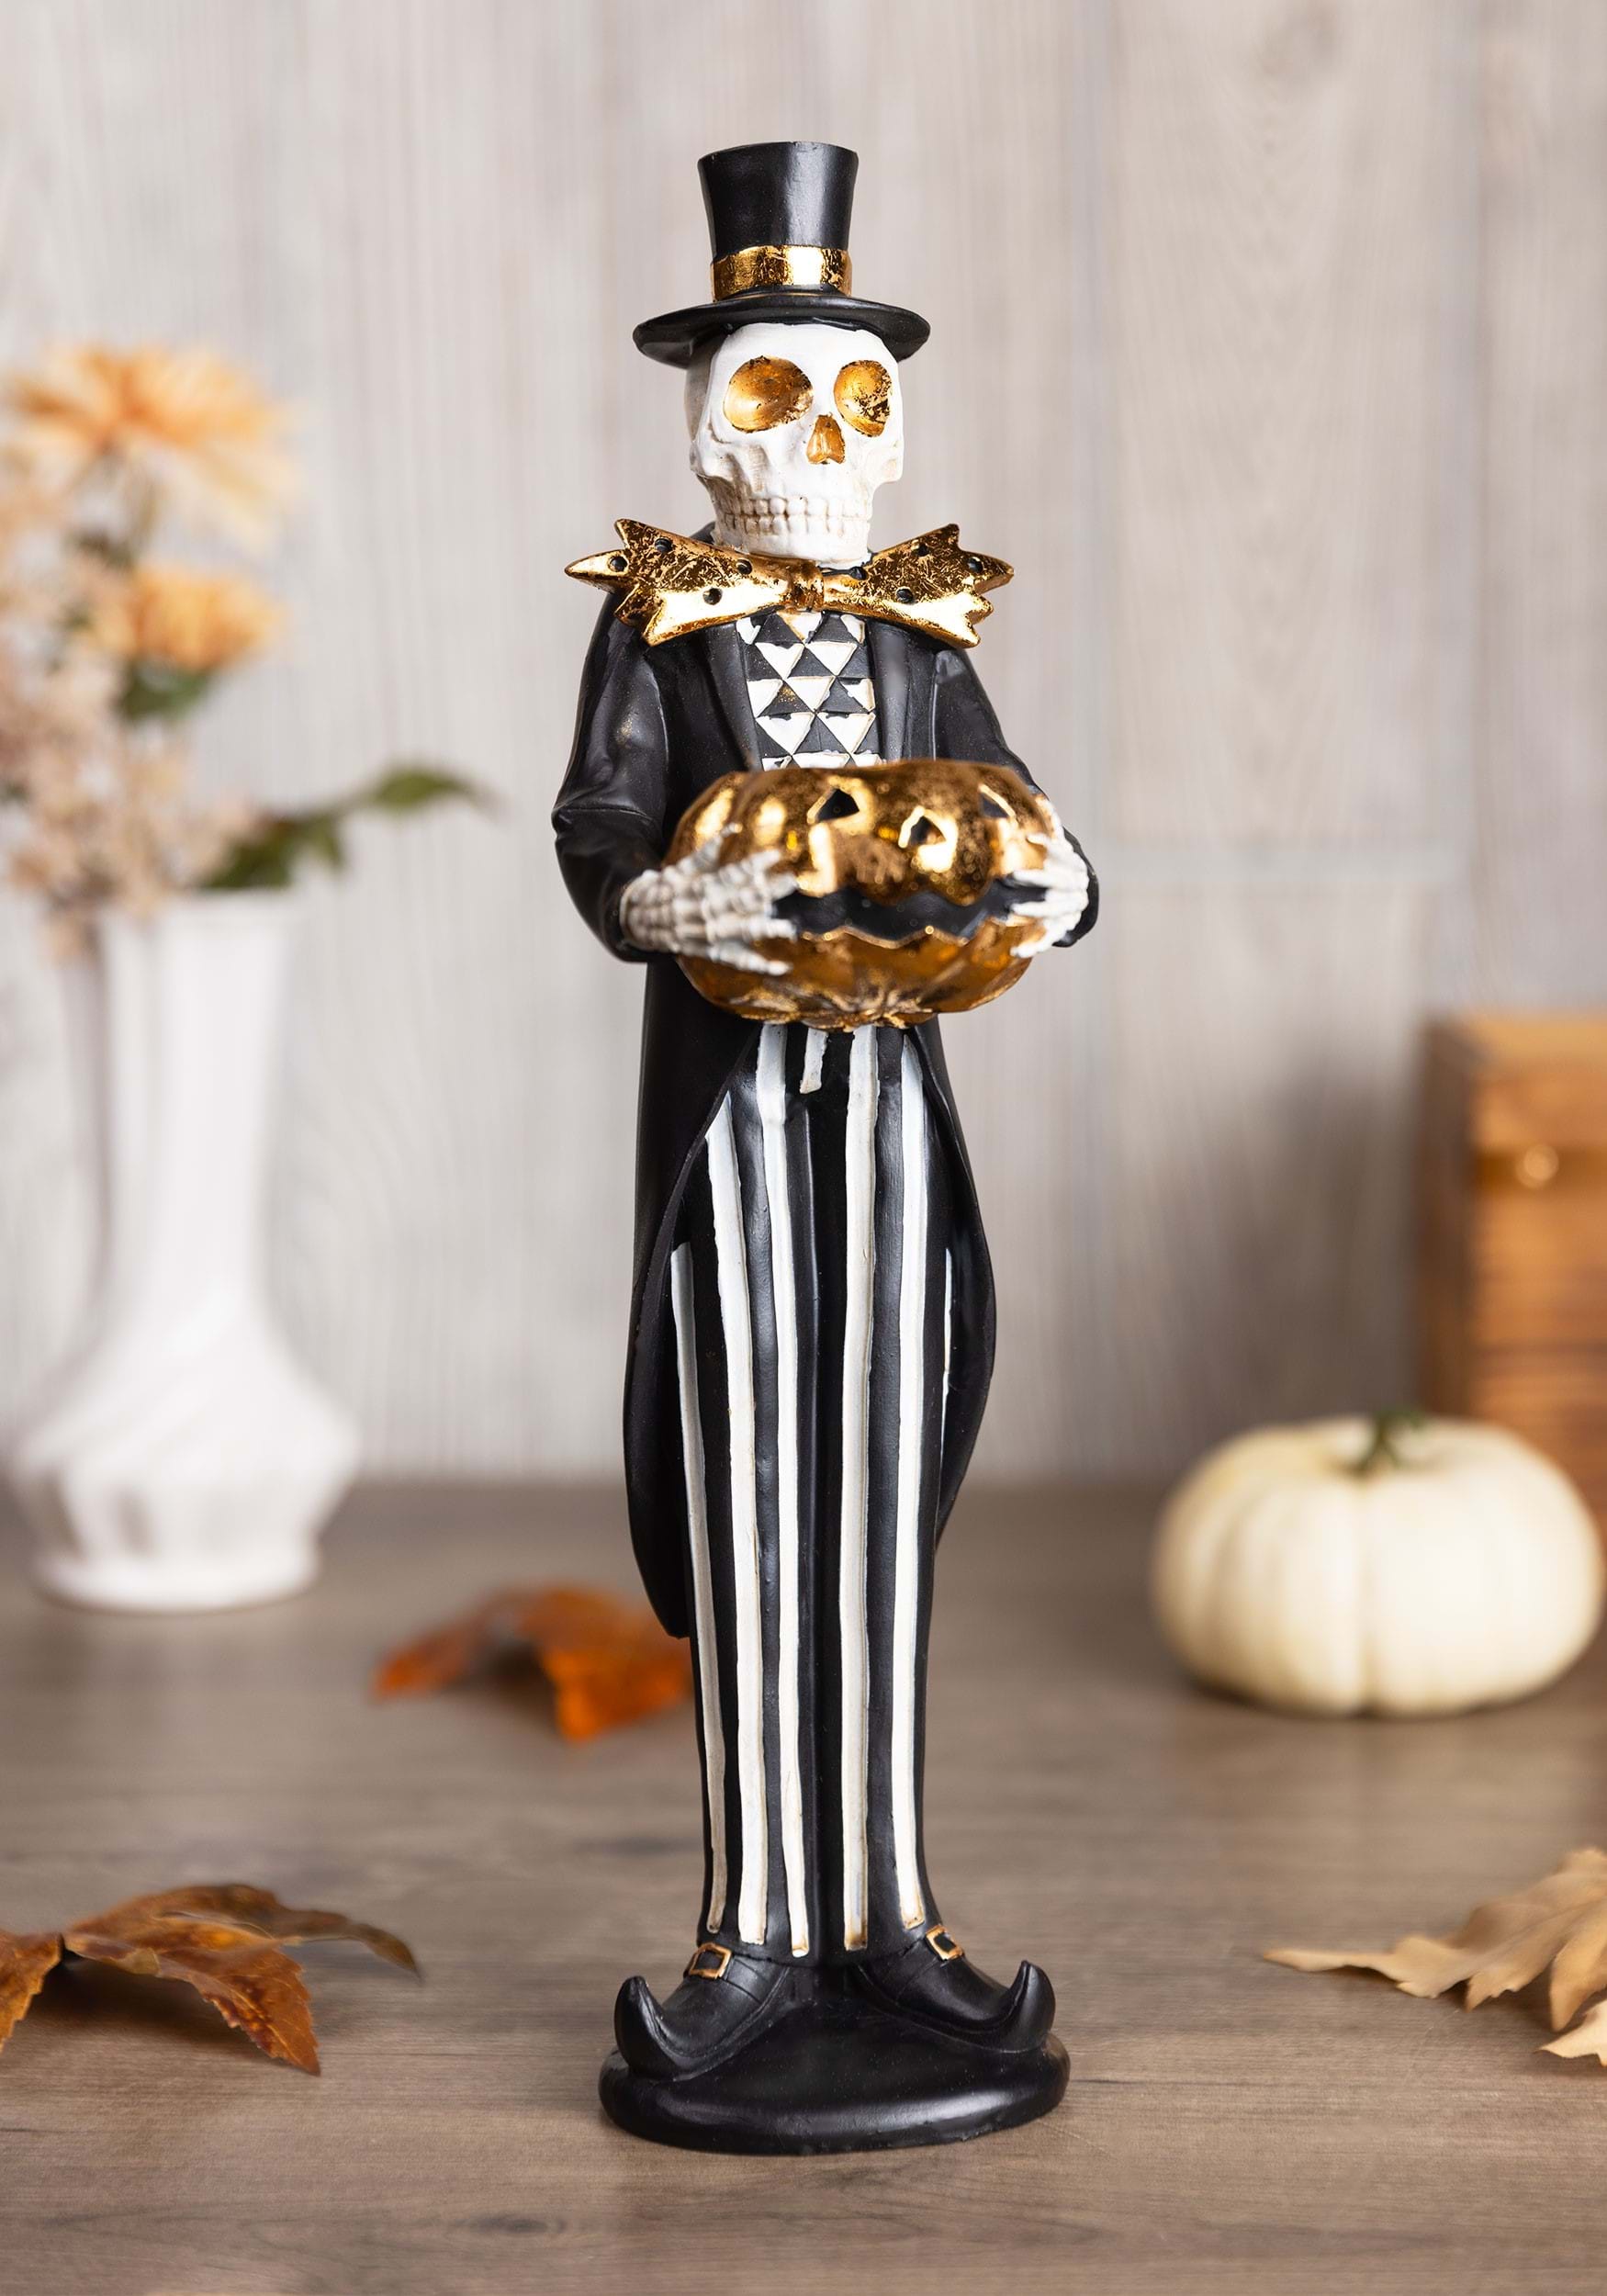 13 Skeleton With Candle Jack 'O Lantern Decorative Figure , Skeleton Decorations